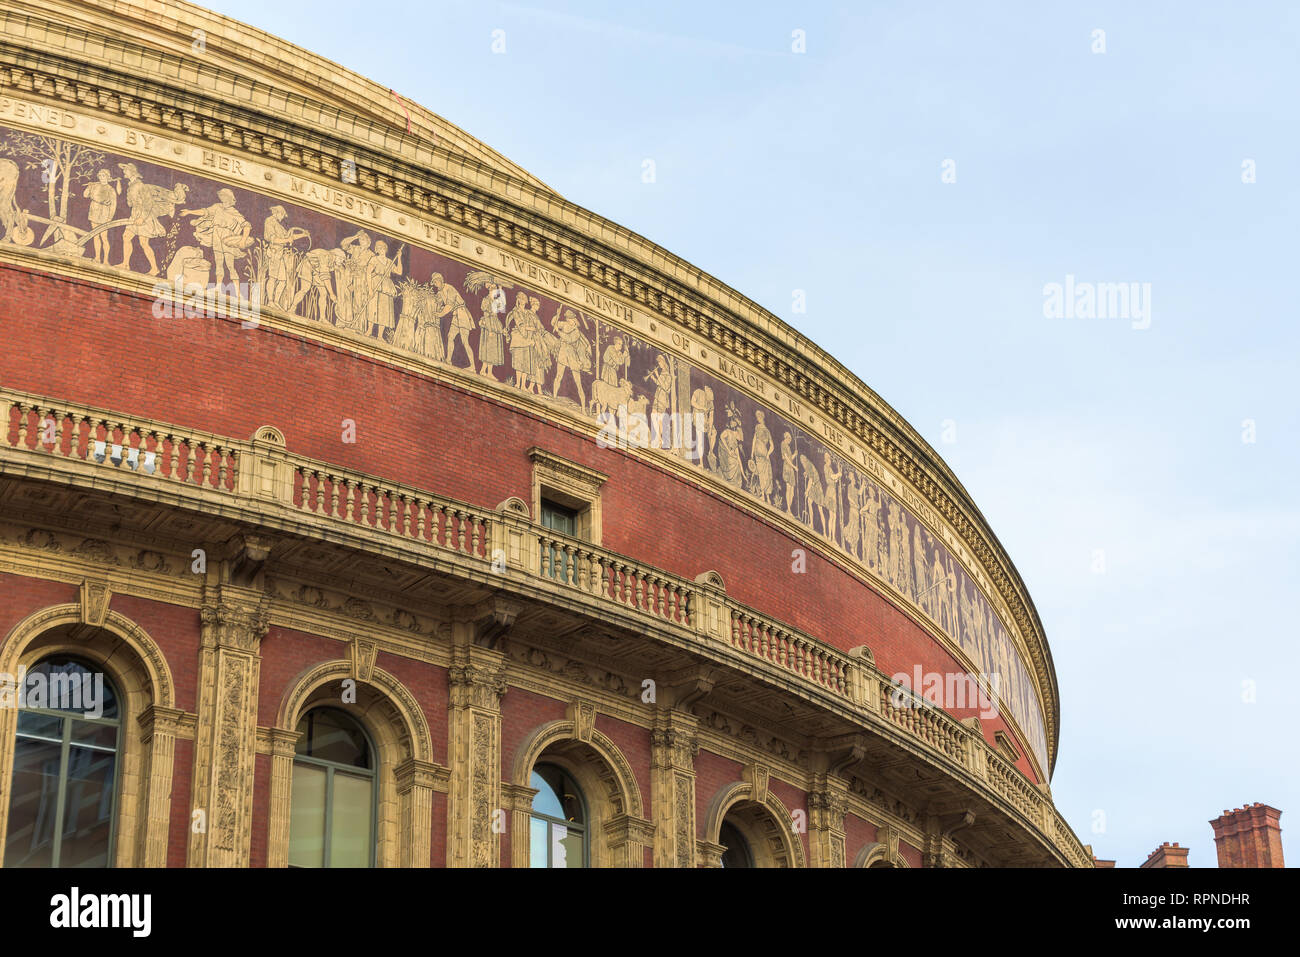 Die Royal Albert Hall, ein konzertsaal am nördlichen Rand von South Kensington, London, die die Proms Konzerte Jährlich jeden Sommer veranstaltet hat. Stockfoto